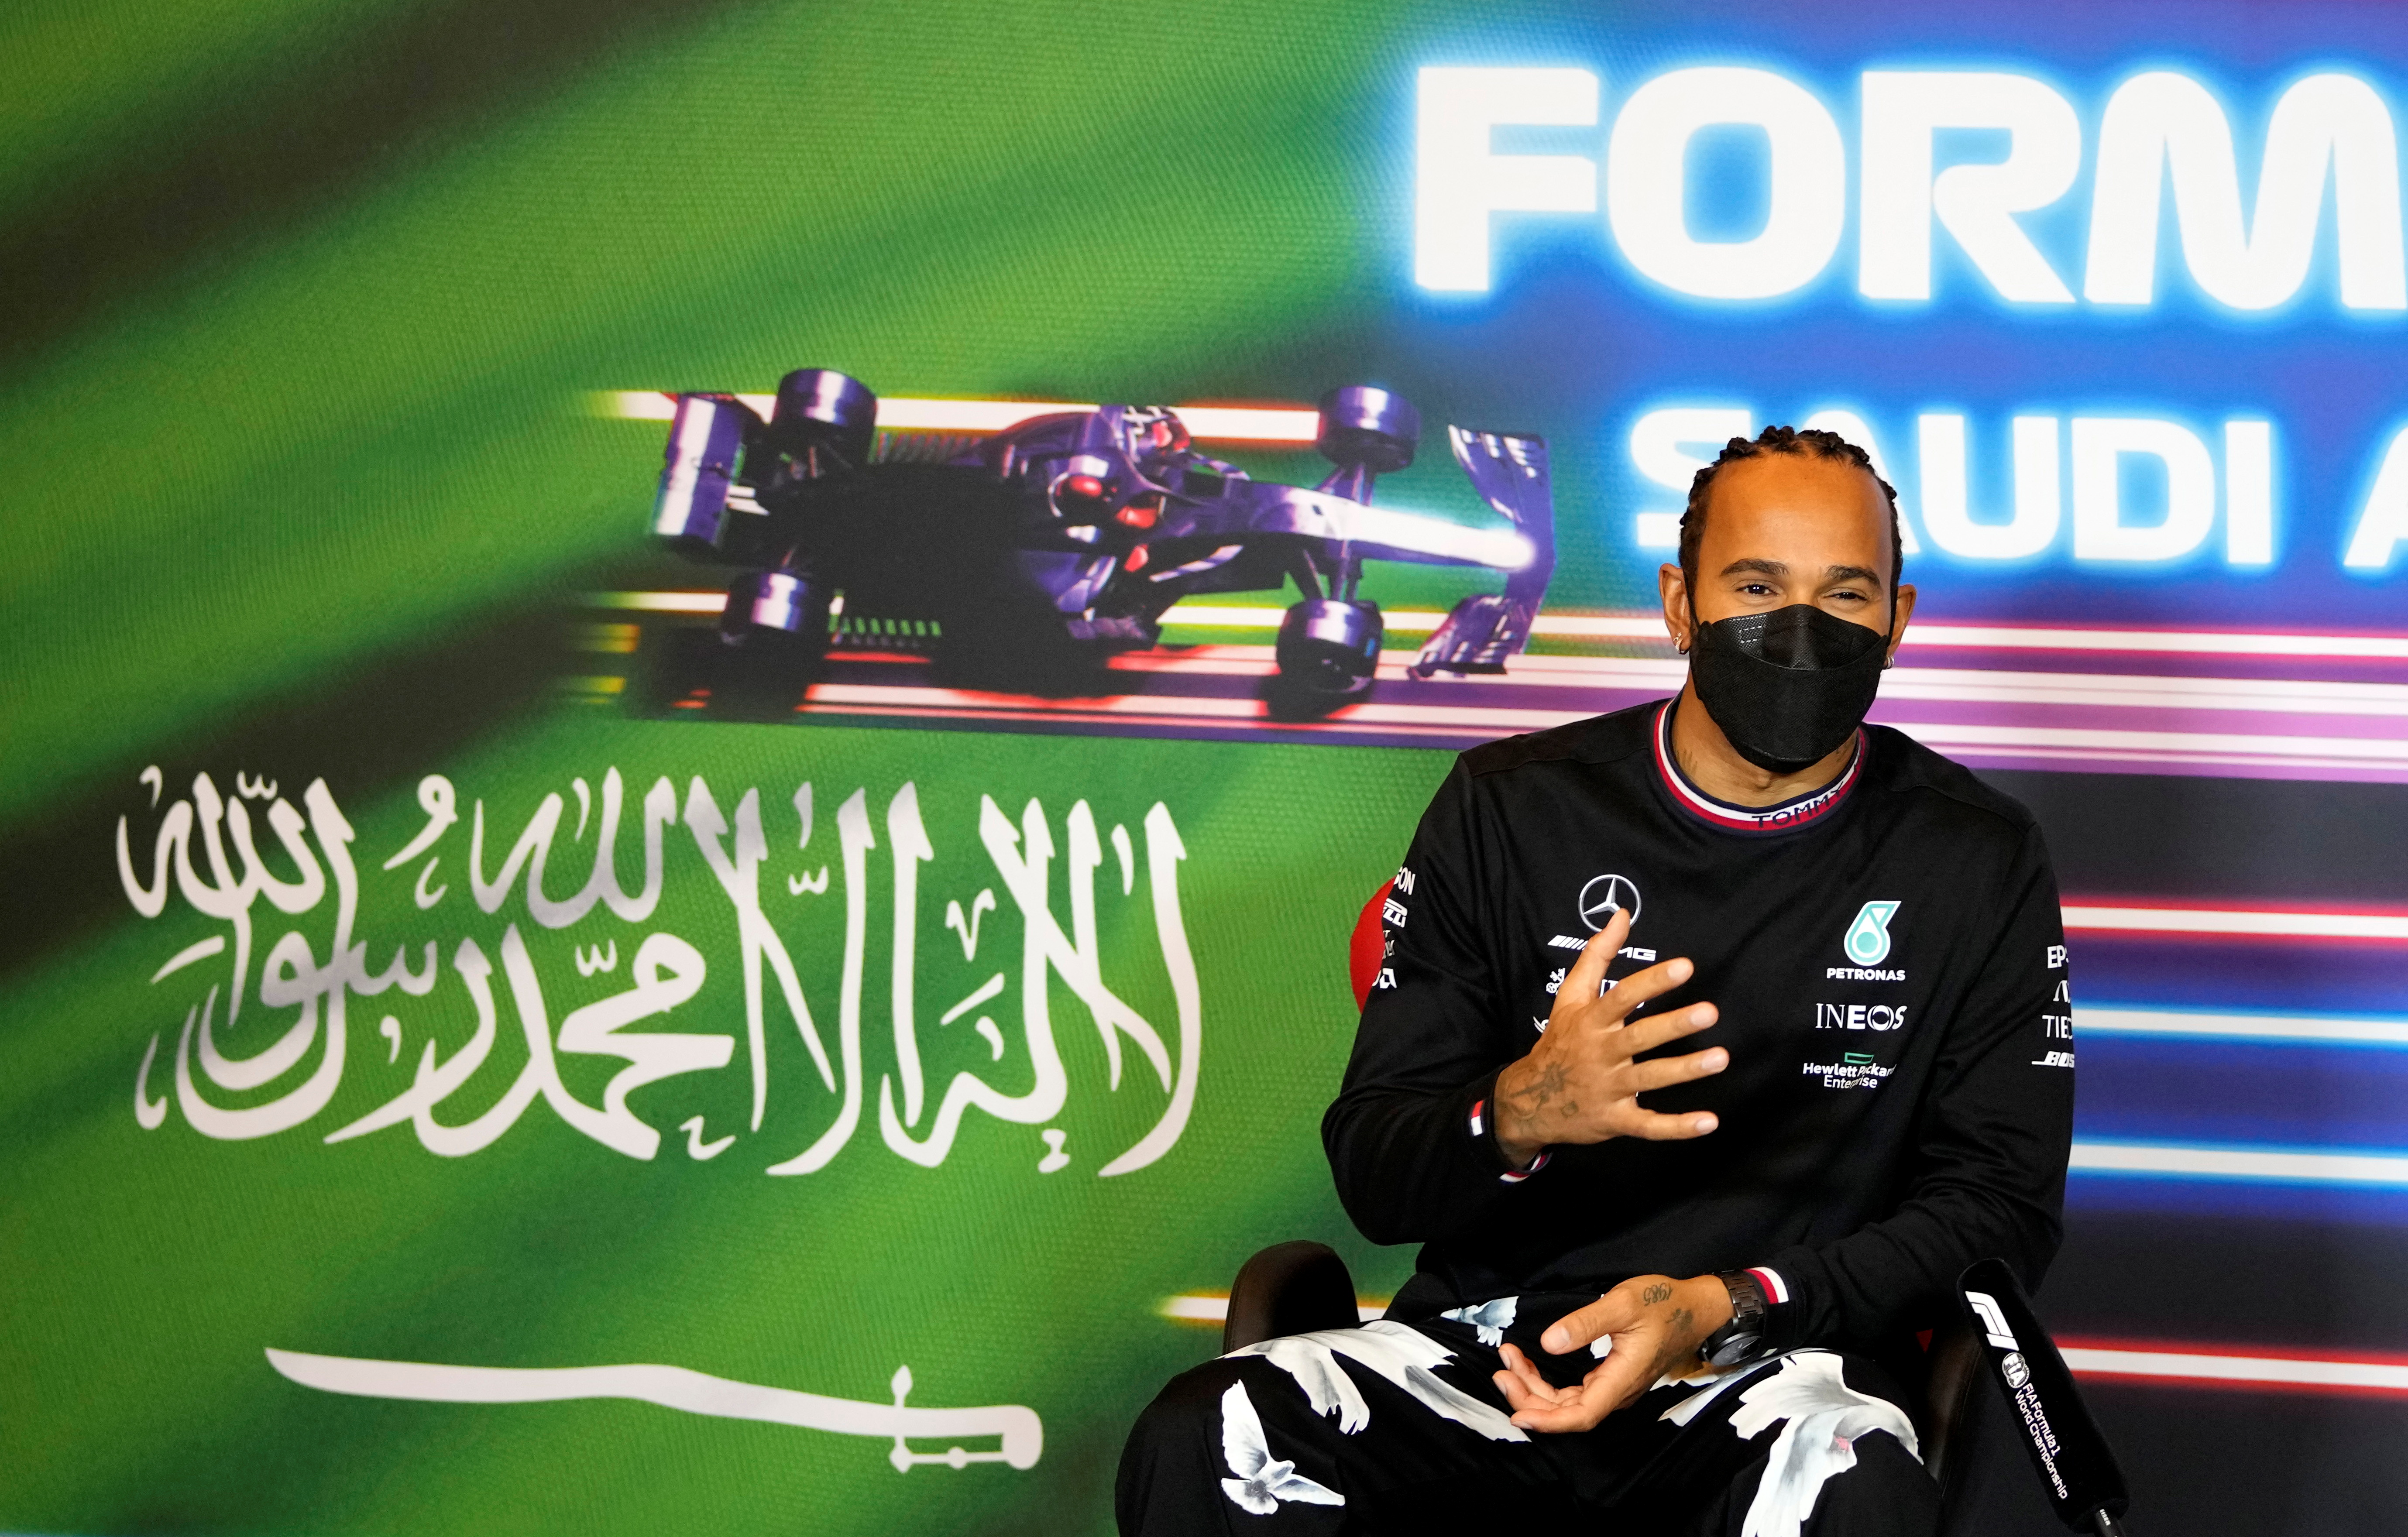 “No estoy cómodo”: desafiante gesto de Lewis Hamilton ante la decisión de la Fórmula 1 de correr en Arabia Saudita